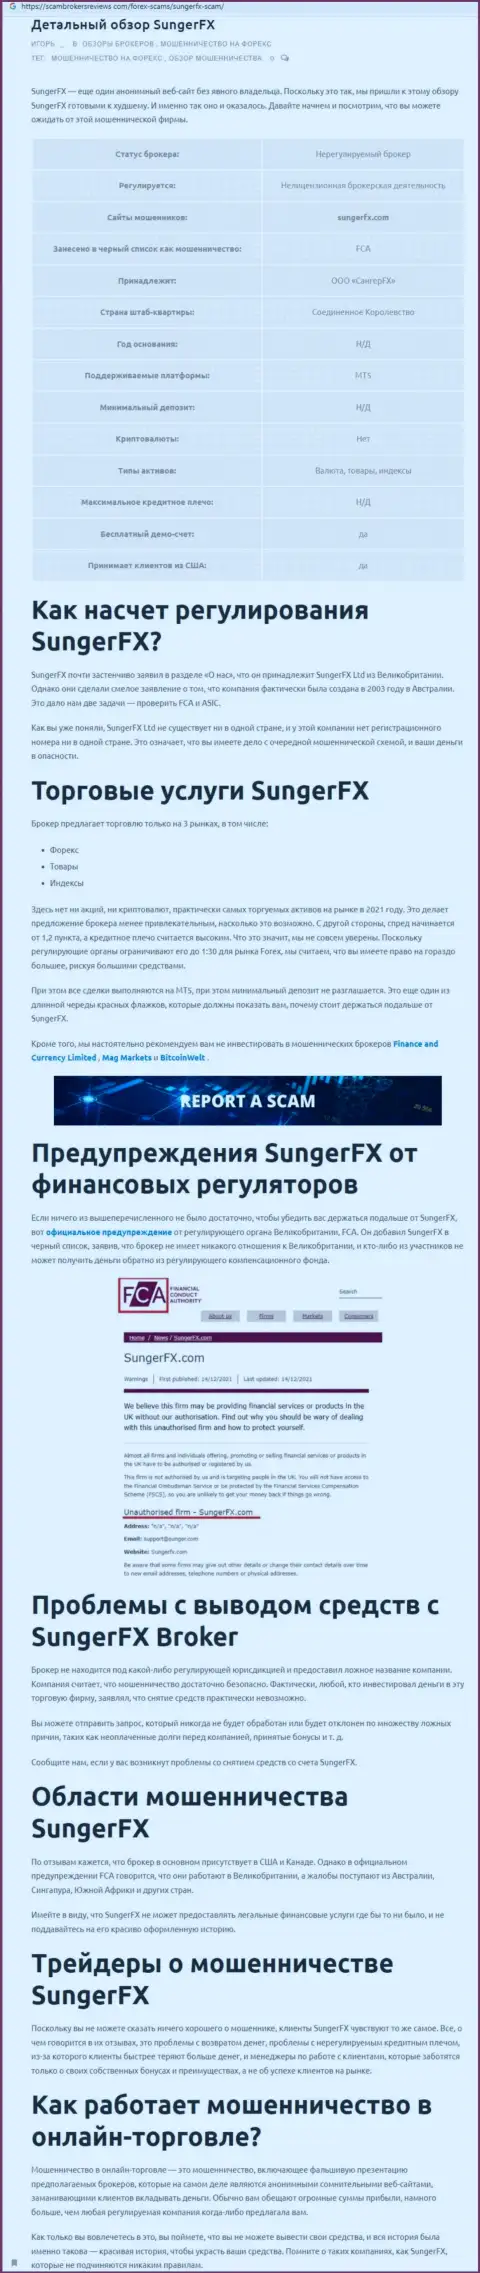 Создатель обзора деяний заявляет о мошенничестве, которое происходит в SungerFX Com